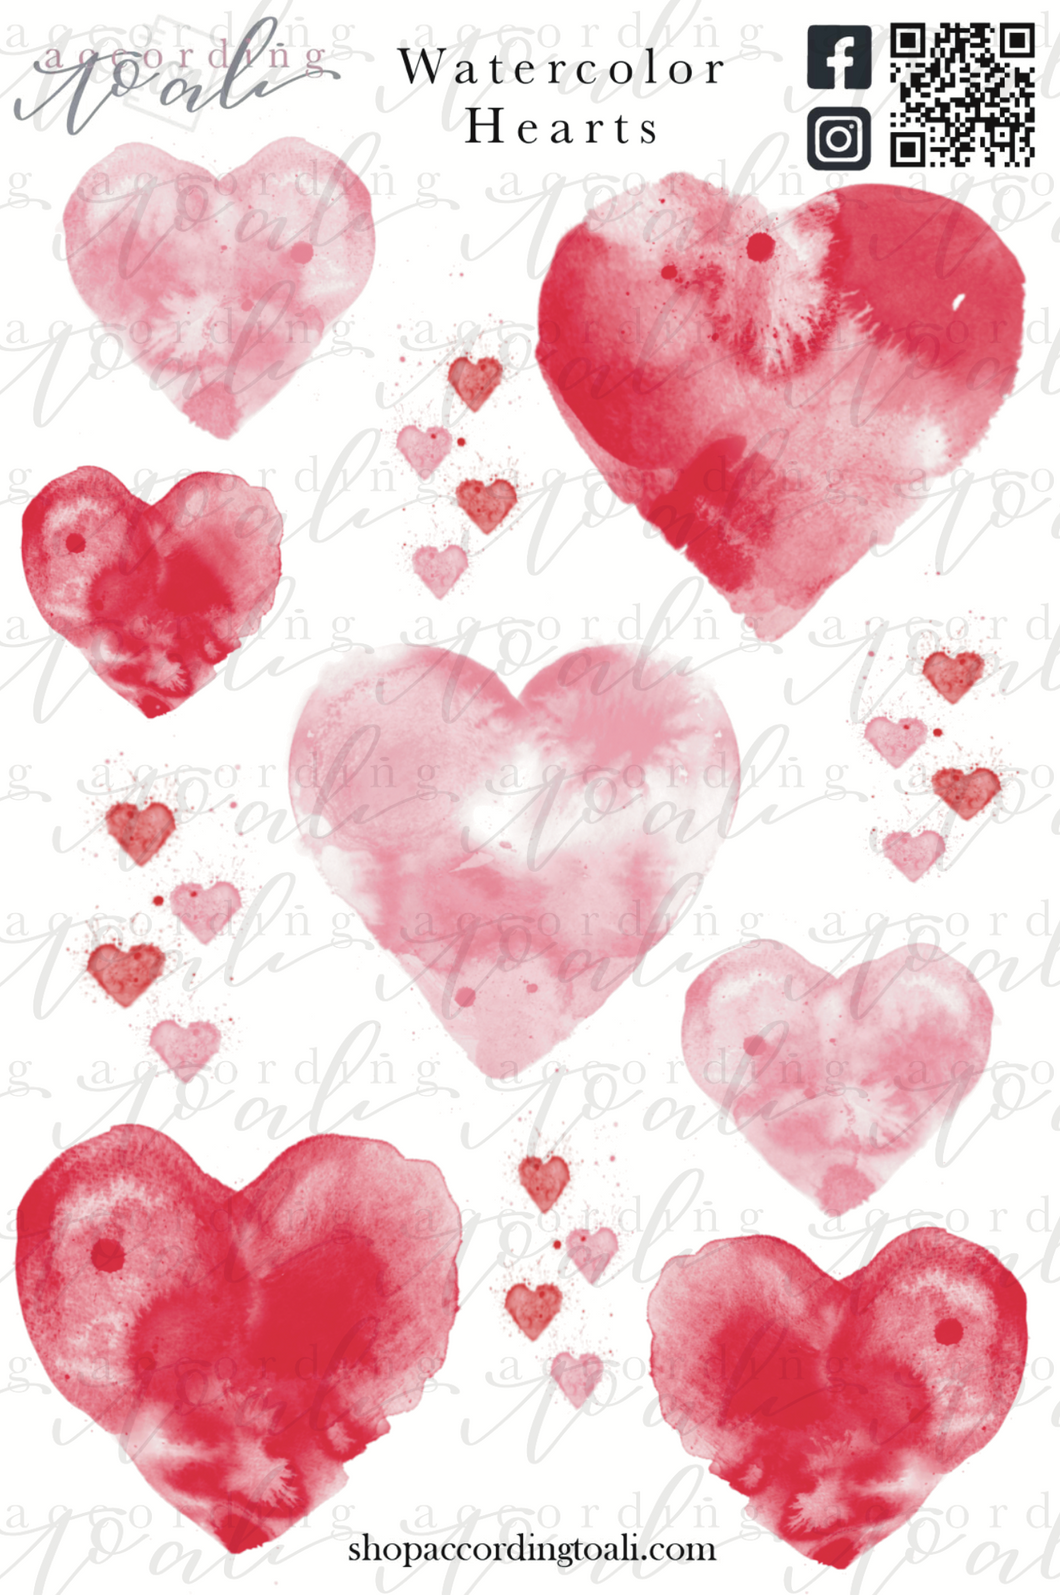 Watercolor Hearts Sticker Sheet